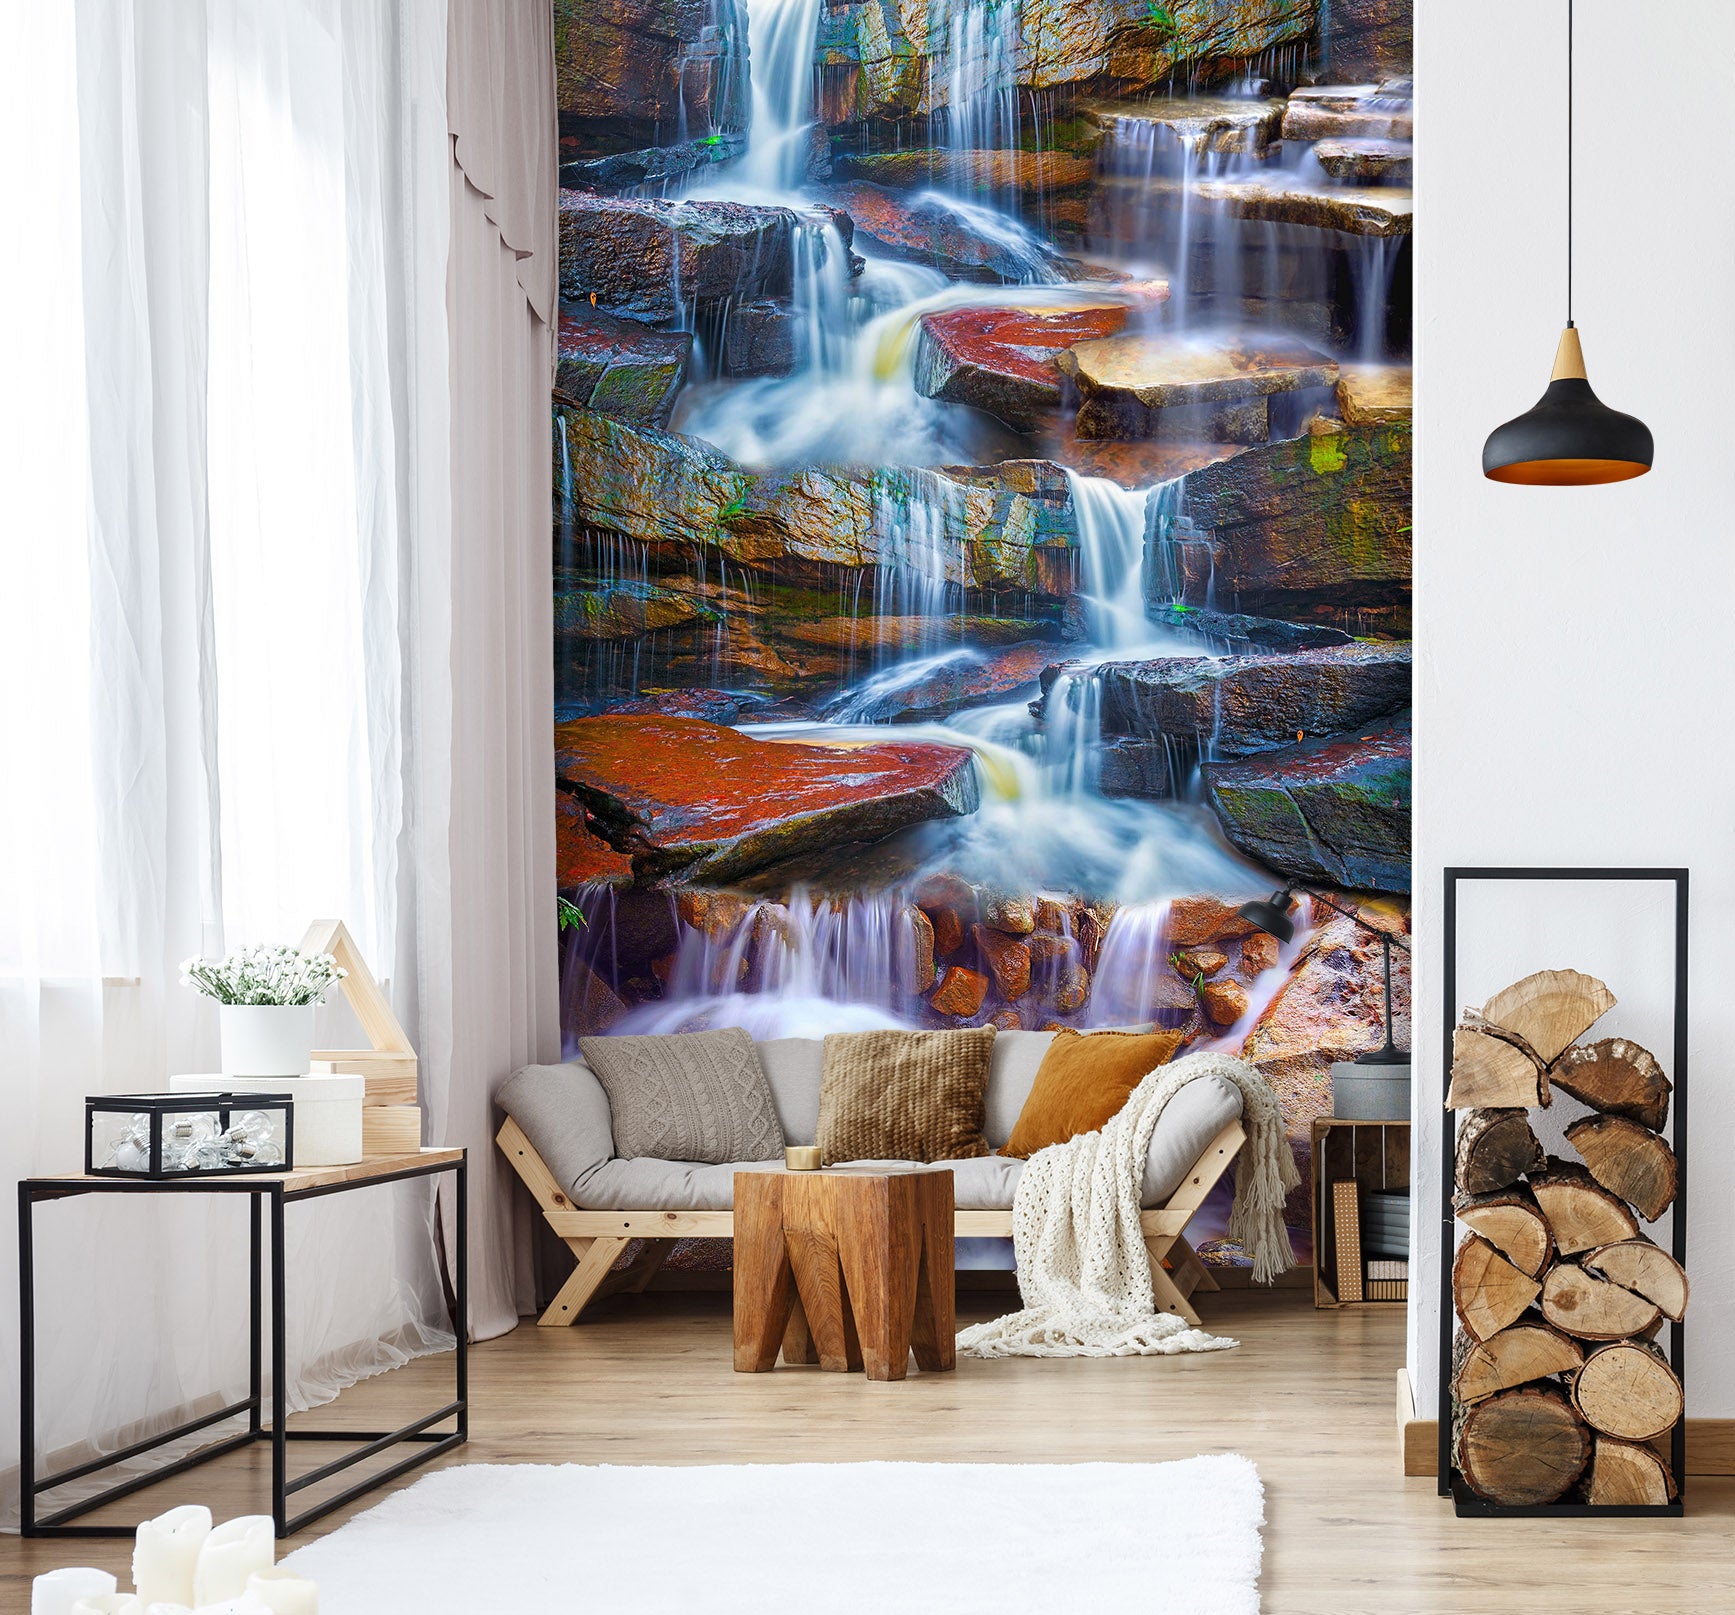 3D Forest Waterfall 1540 Wall Murals